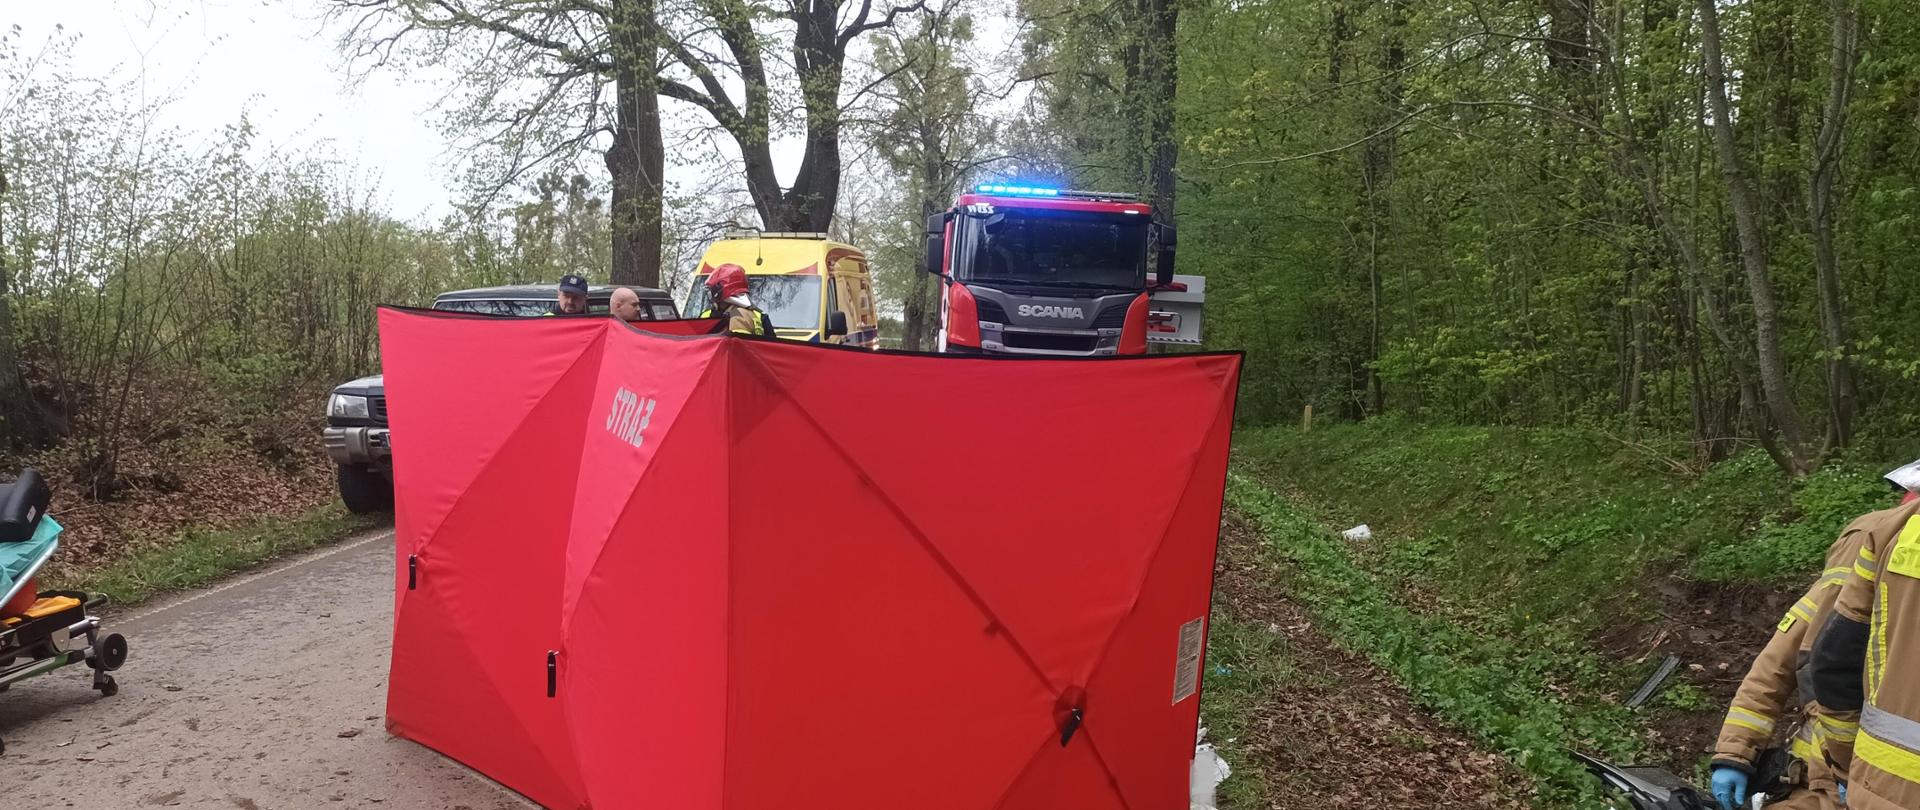 Parawan strażacki w celu zakrycia drastycznych widoków i zachowania prywatności poszkodowanej, w oddali pojazd strażacki i ambulans